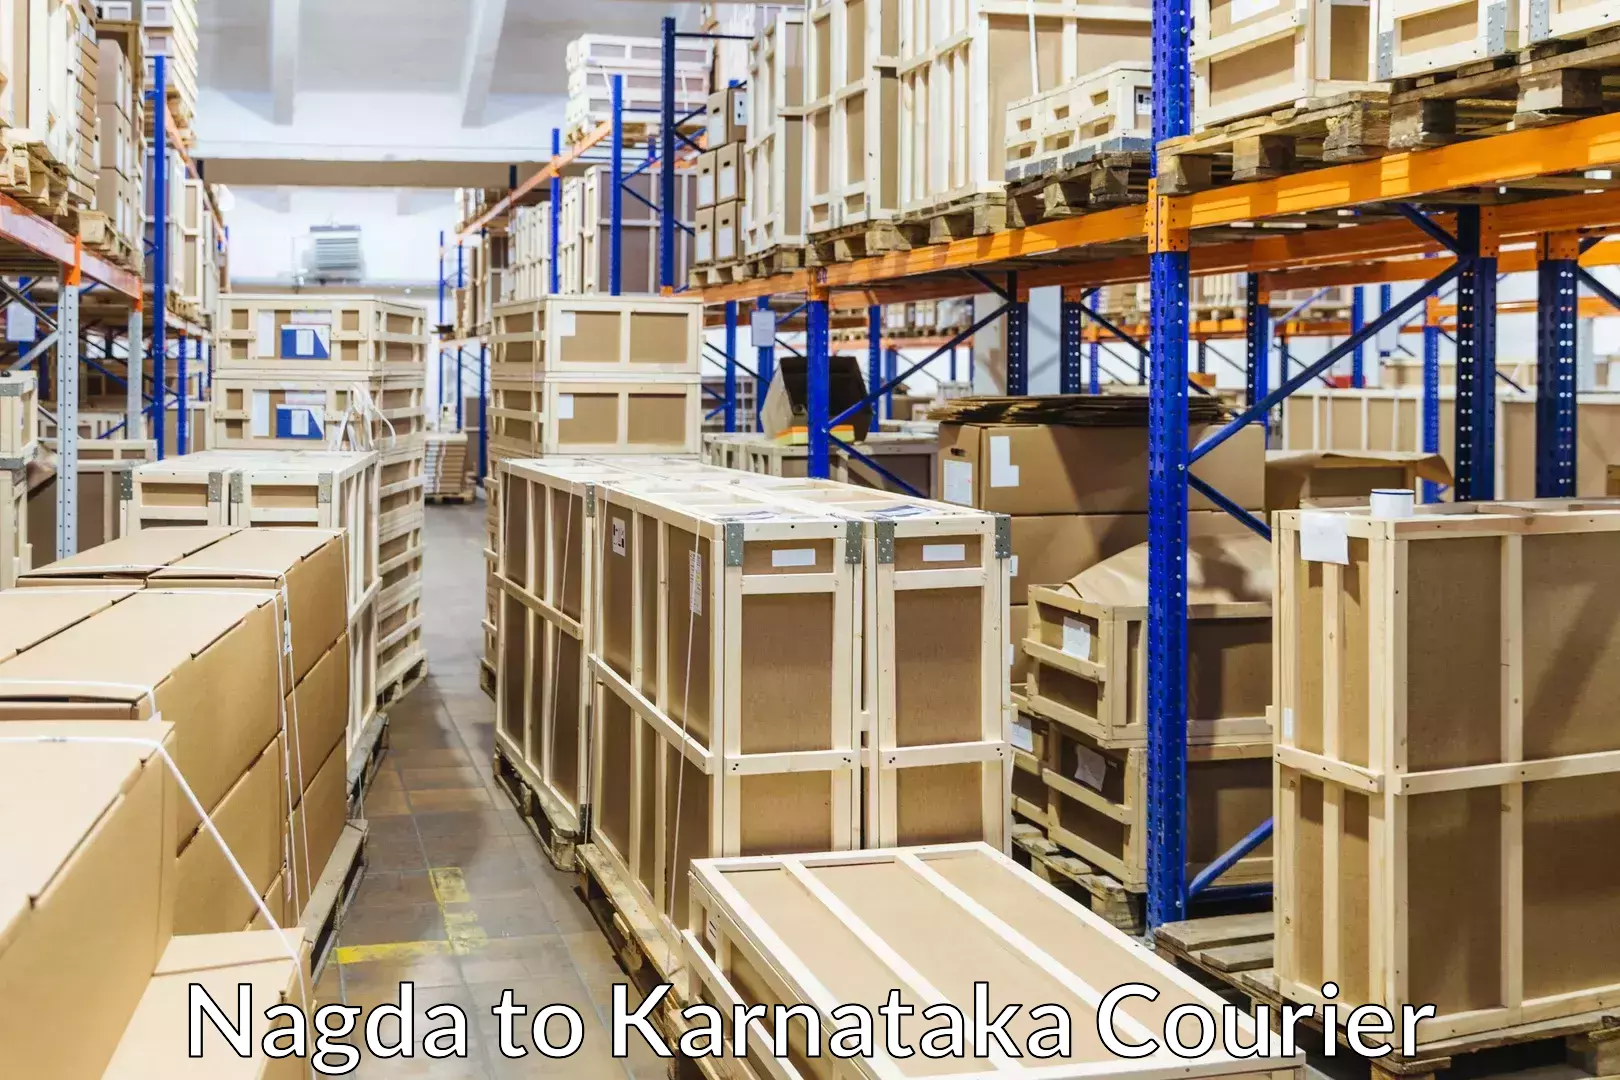 Reliable furniture movers Nagda to Karnataka